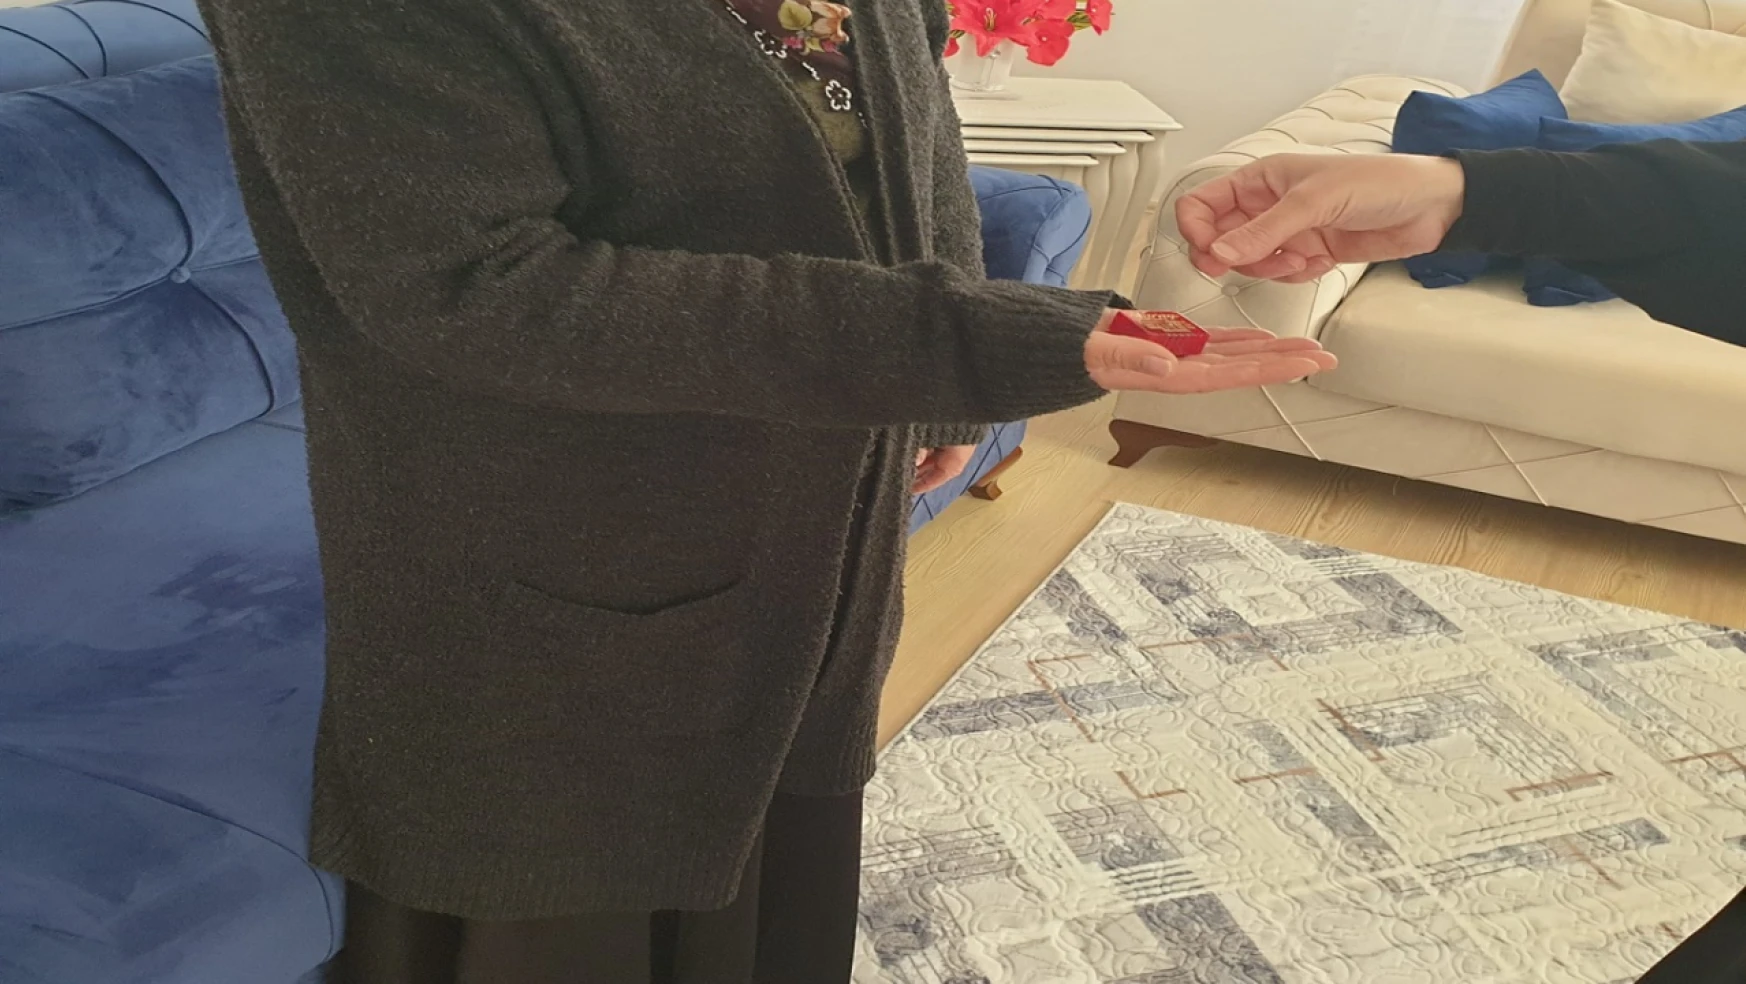 Yetimler Vakfı Elazığ'da Ev Borcu Olan İki Yetim Aileye Altın Yardımında Bulundu